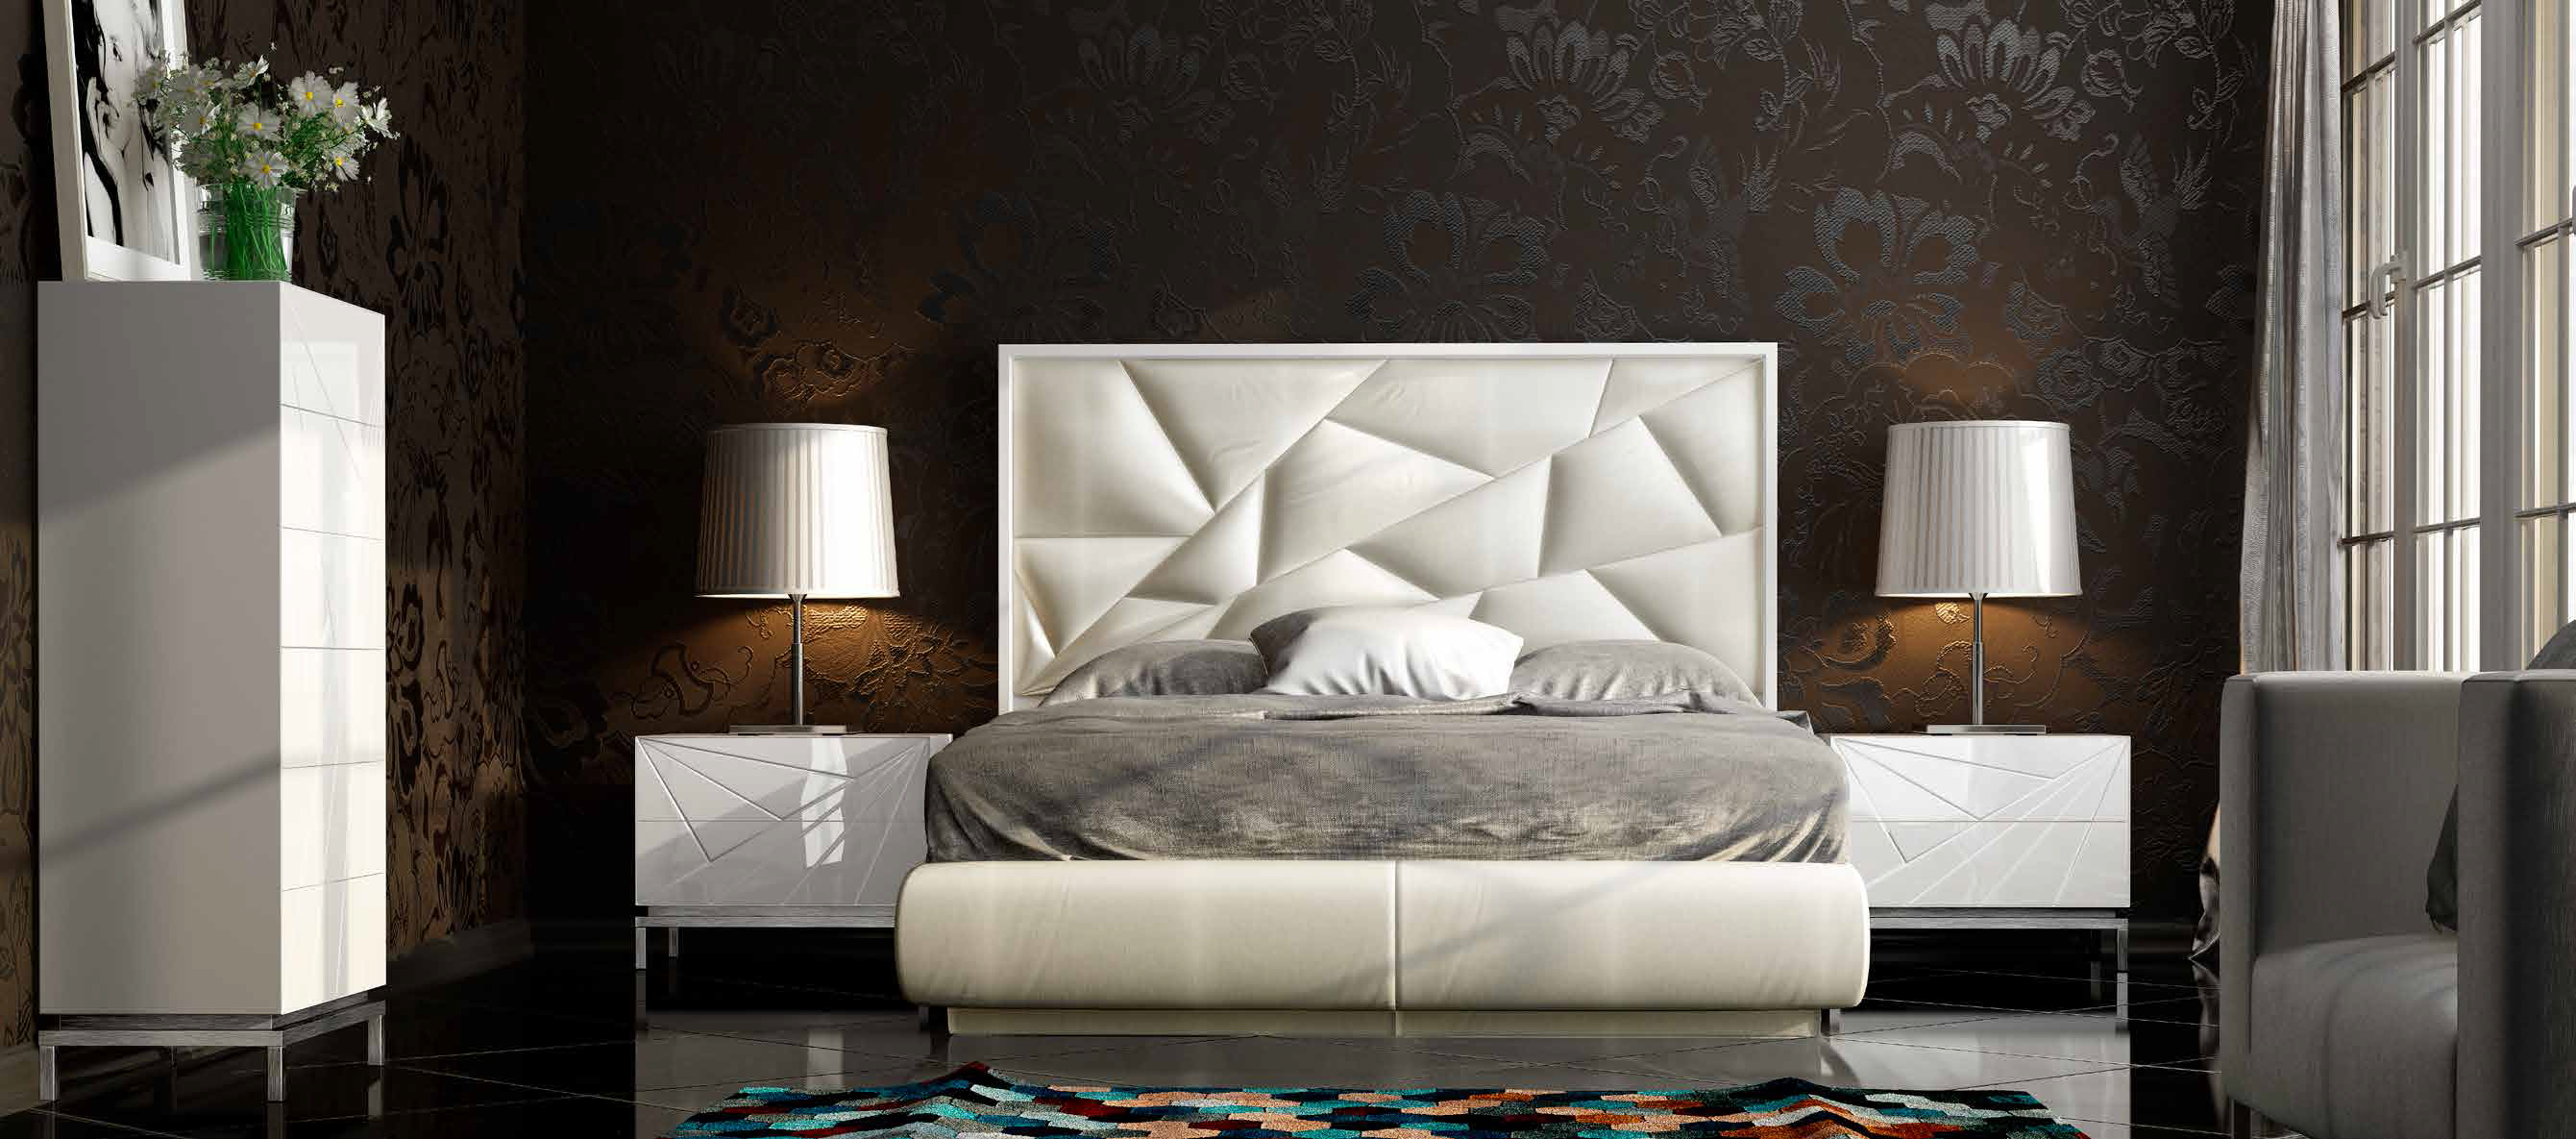 Brands Franco Furniture Avanty Bedrooms, Spain DOR 20